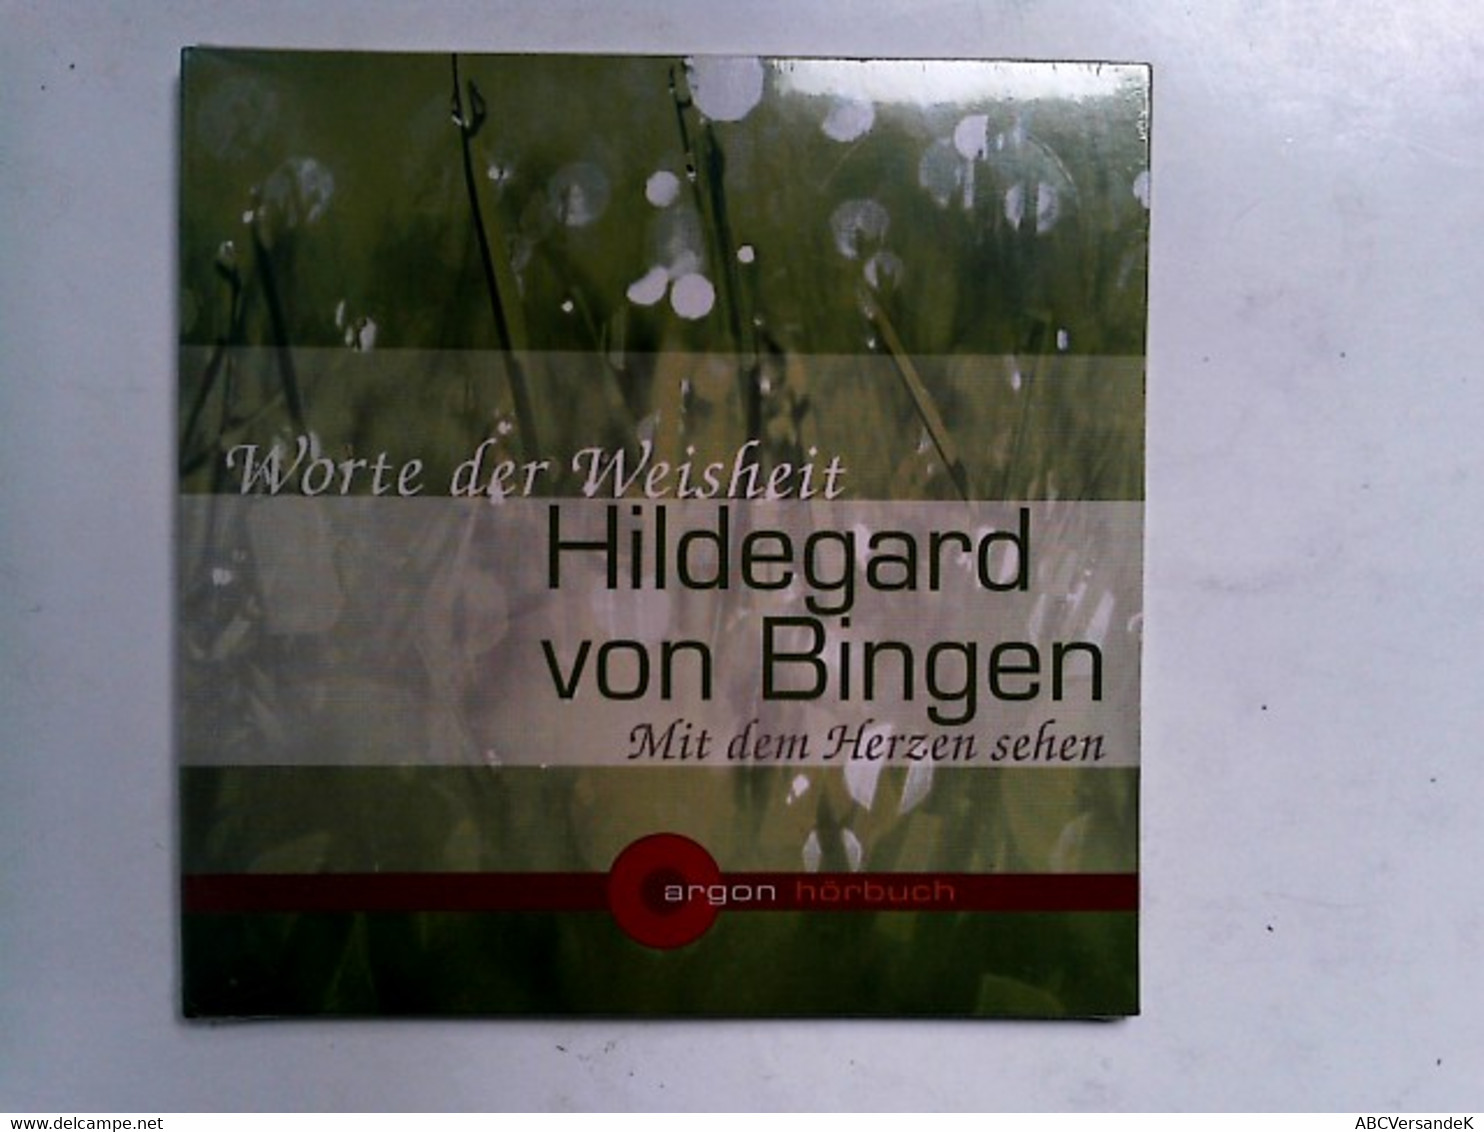 Hildegard Von Bingen. Mit Dem Herzen Sehen: Worte Der Weisheit - CDs